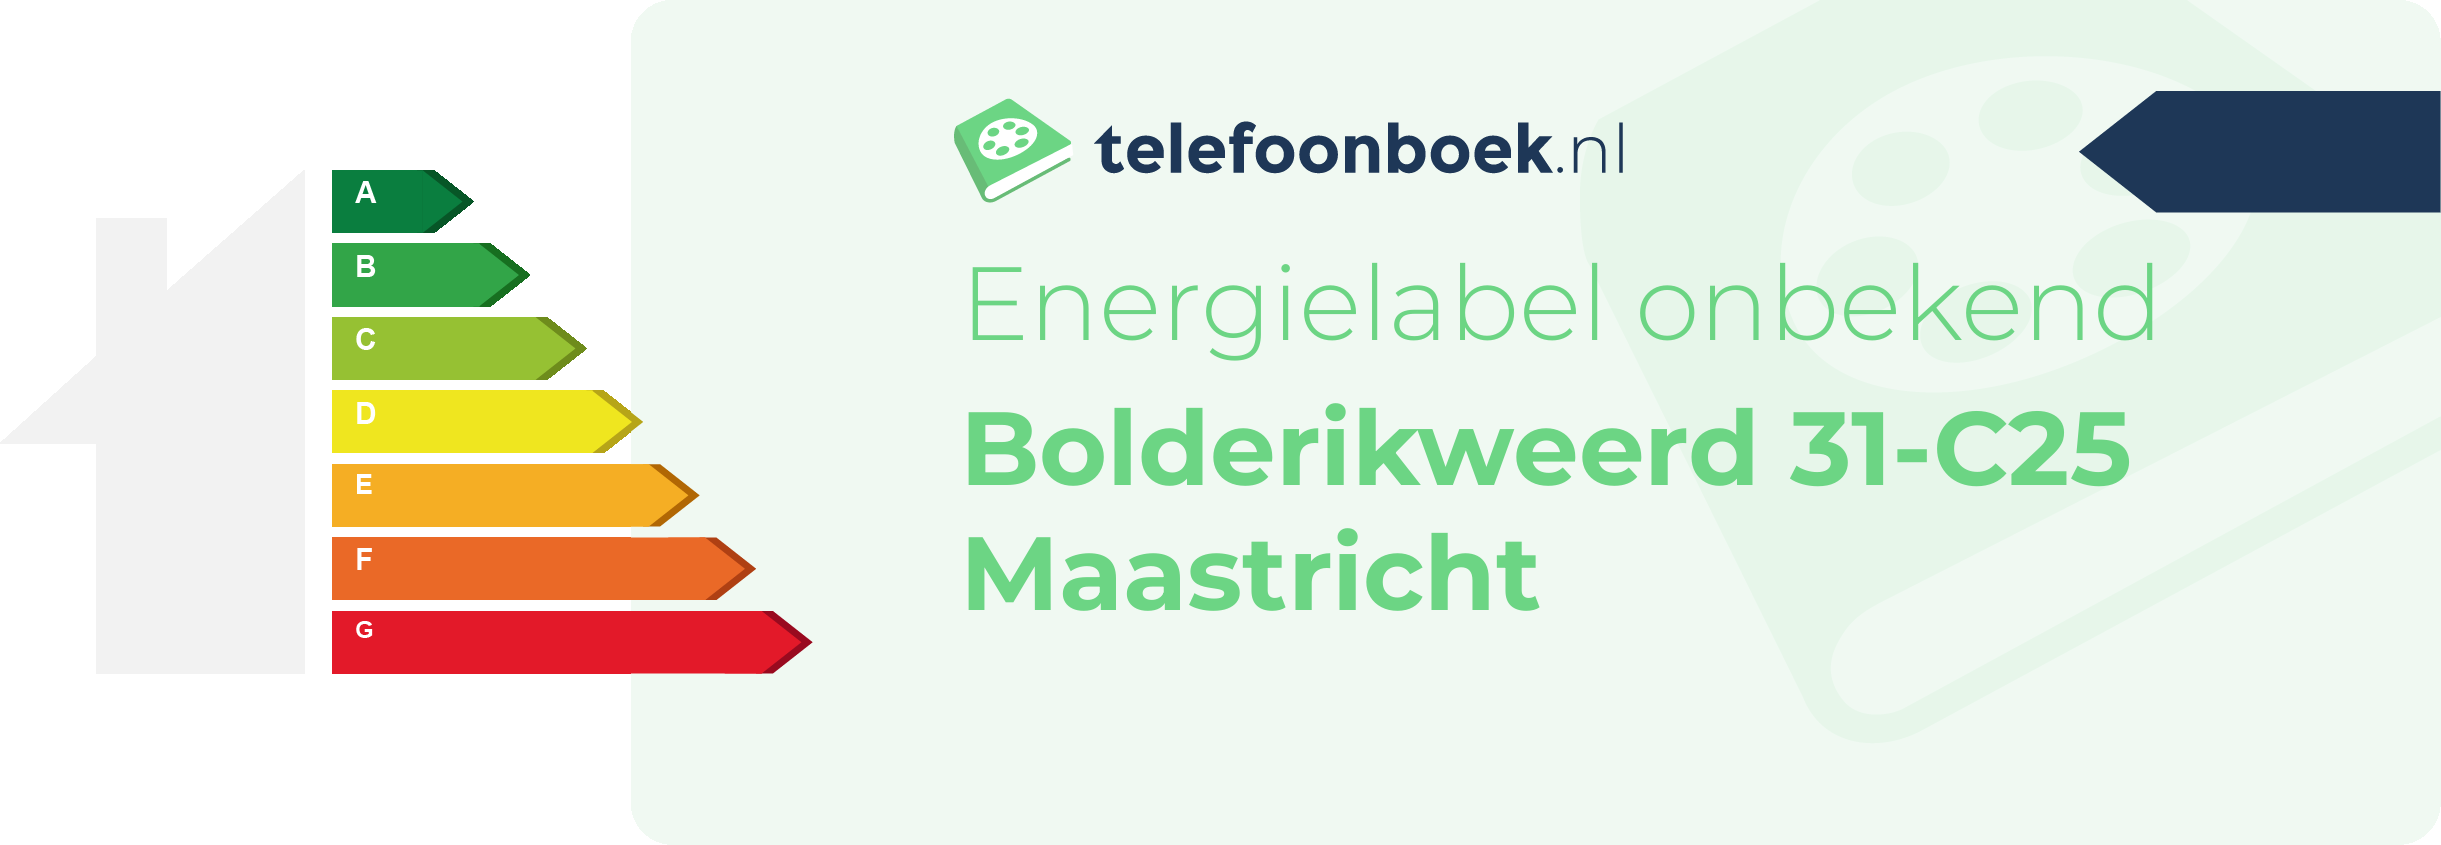 Energielabel Bolderikweerd 31-C25 Maastricht